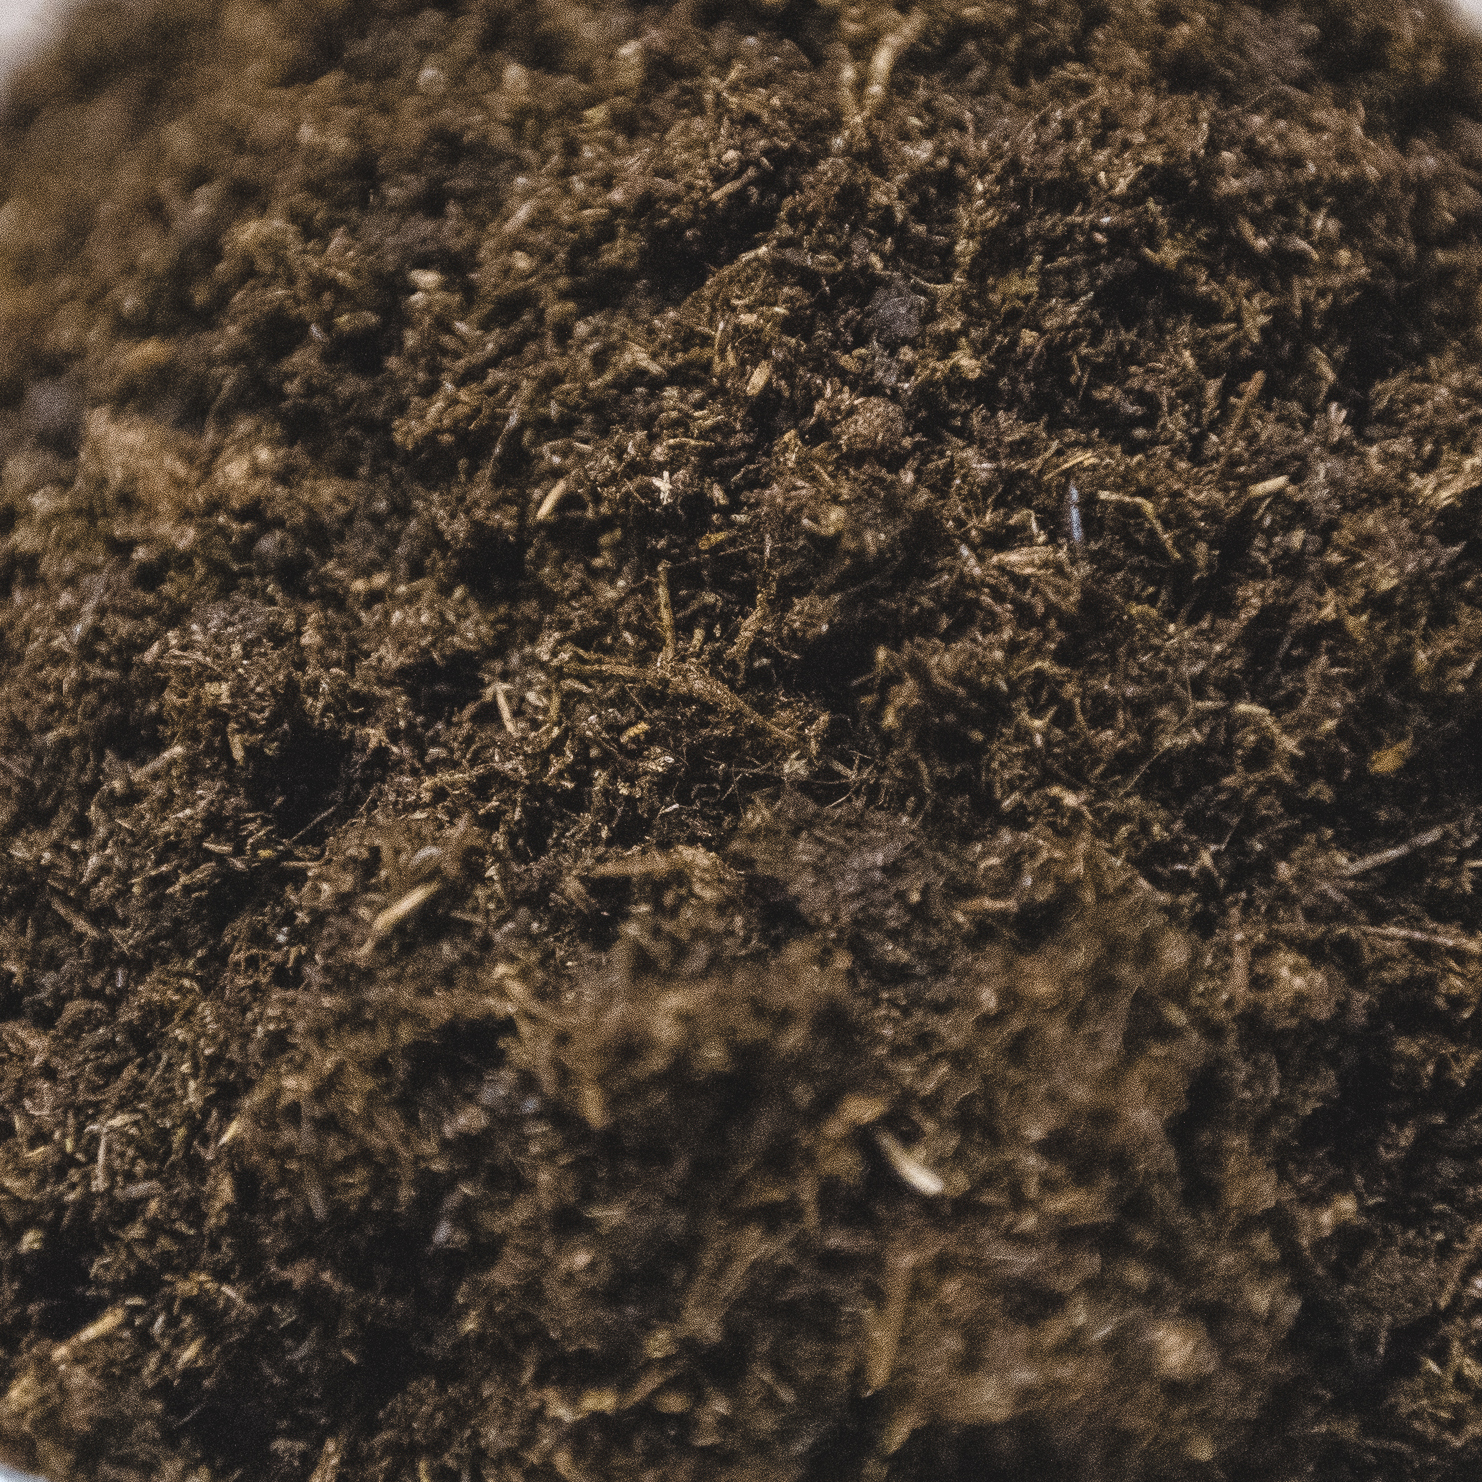 使用泥炭作为对家畜褥草或用于制备堆肥的乡村企业